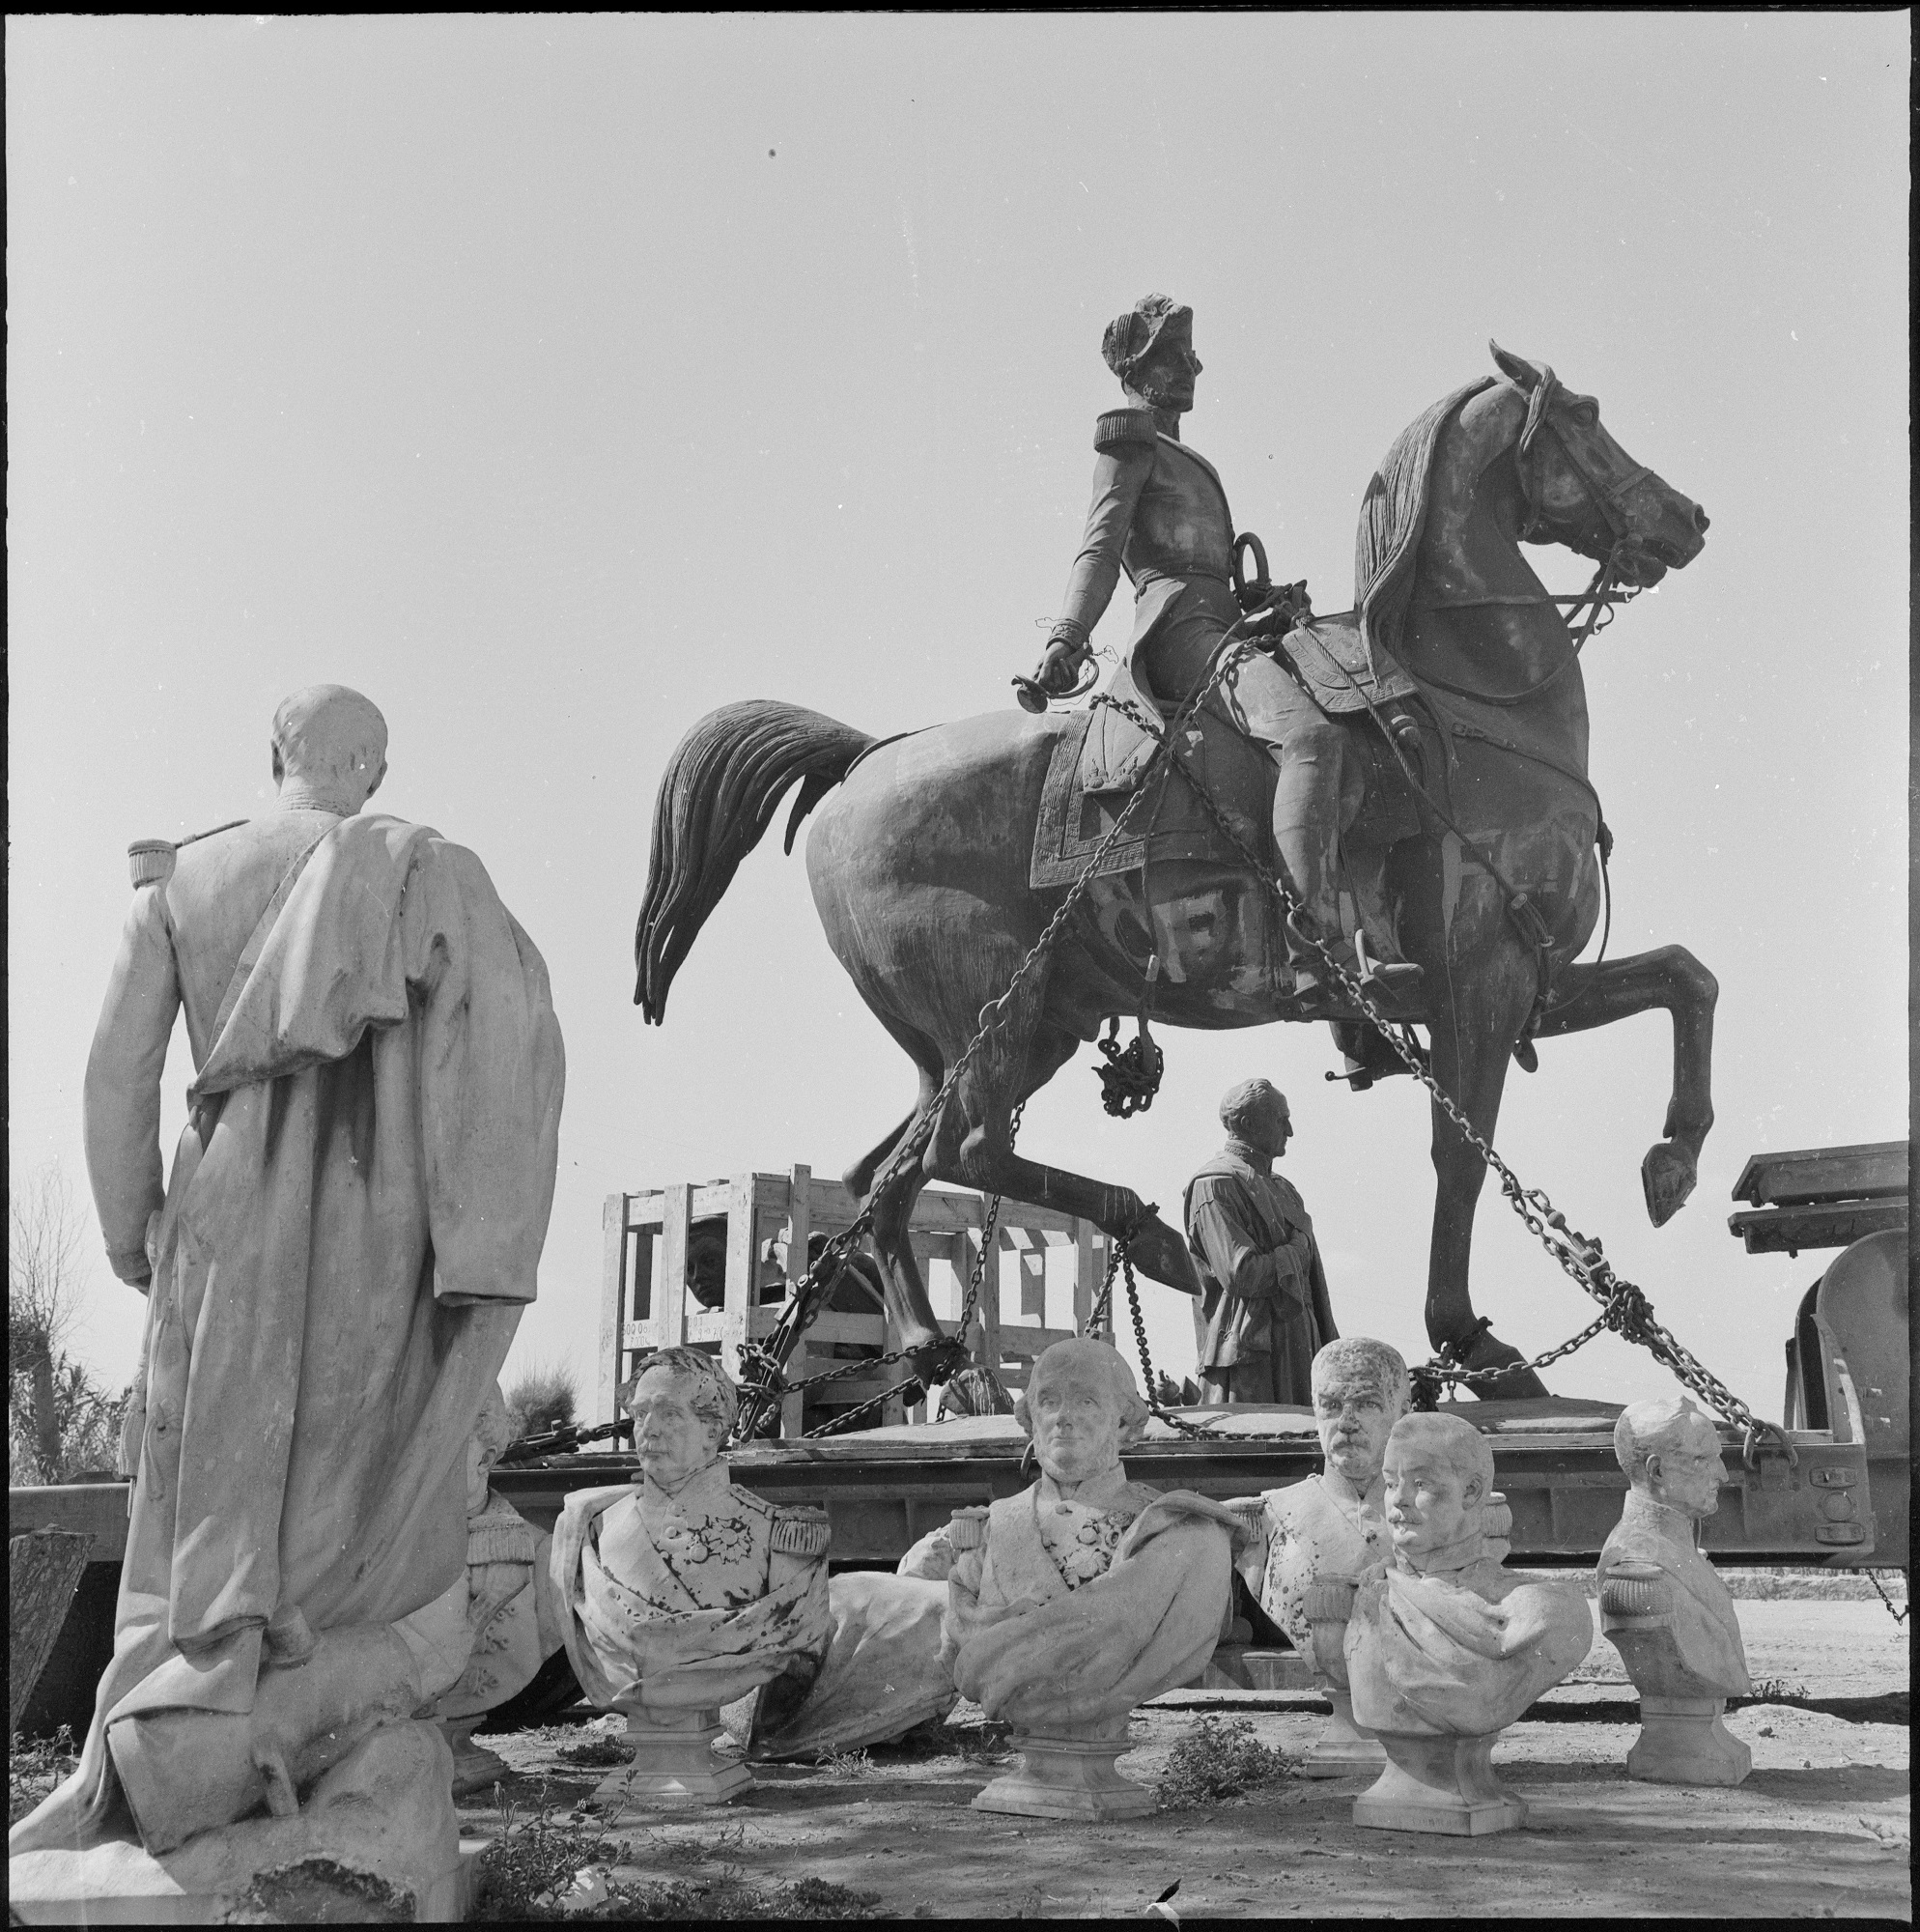 La statue équestre du duc d'Orléans enchaînée sur une remorque en attendant son rapatriement vers la France en jullet 1962 